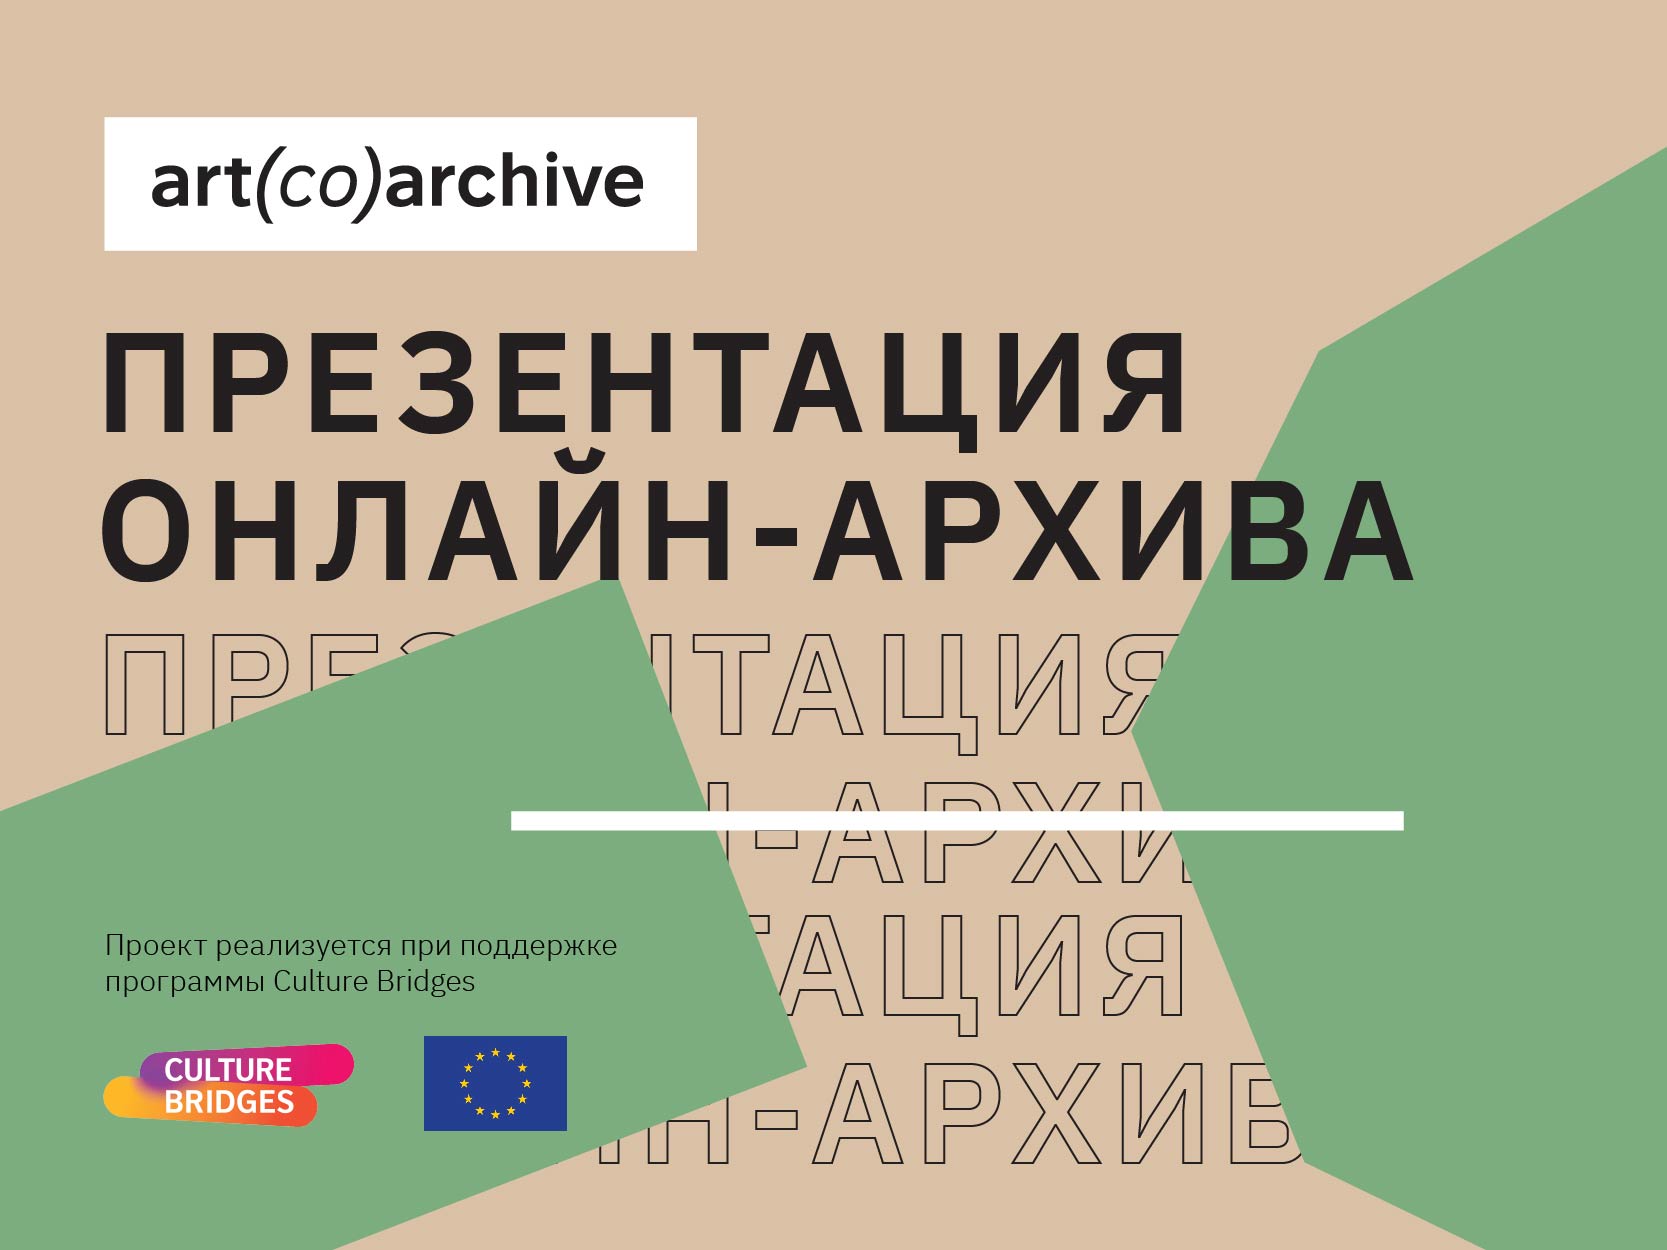 art(co)archive: в Одессе пройдет презентация онлайн-архива современного искусства